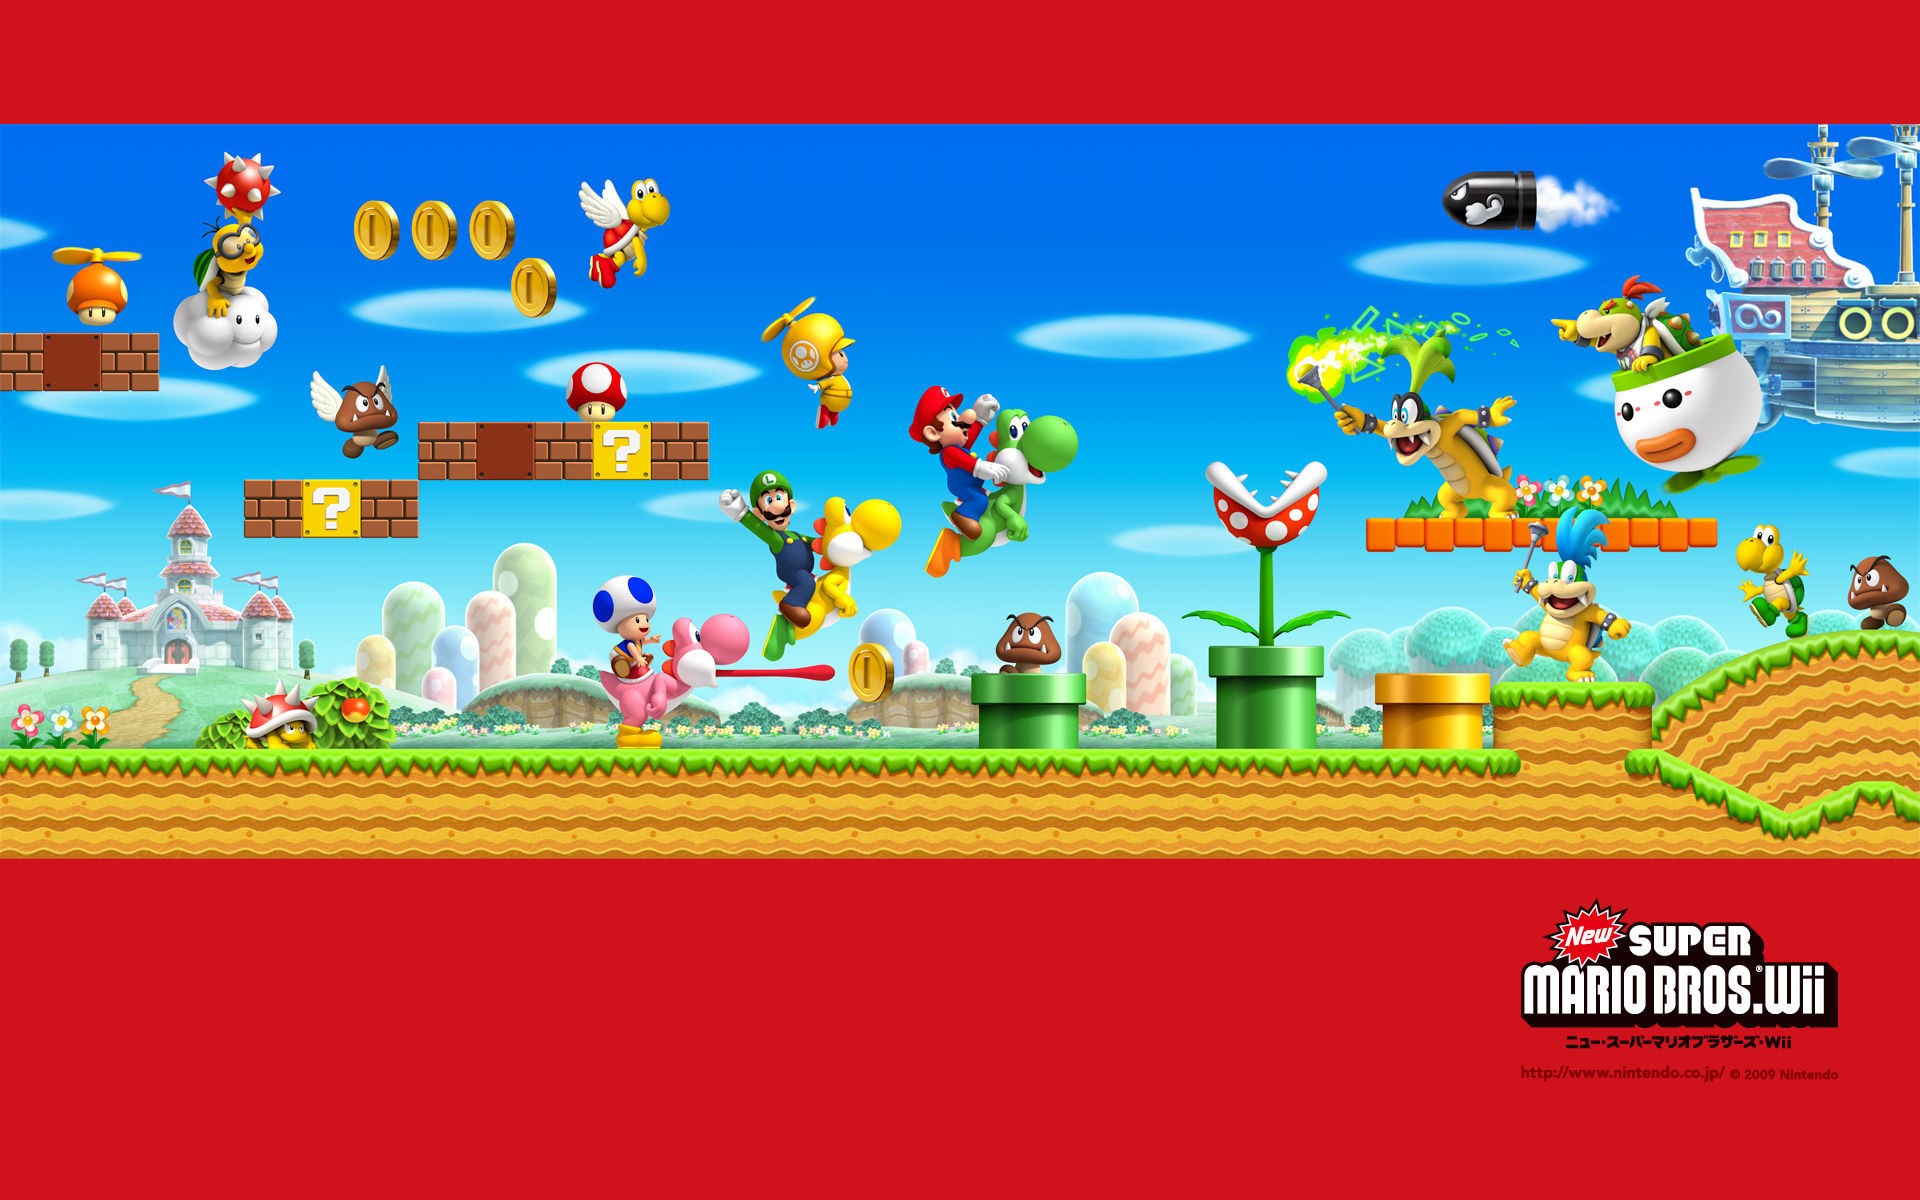 ¿Qué objeto usa Mario para volar en New super mario bros wii?